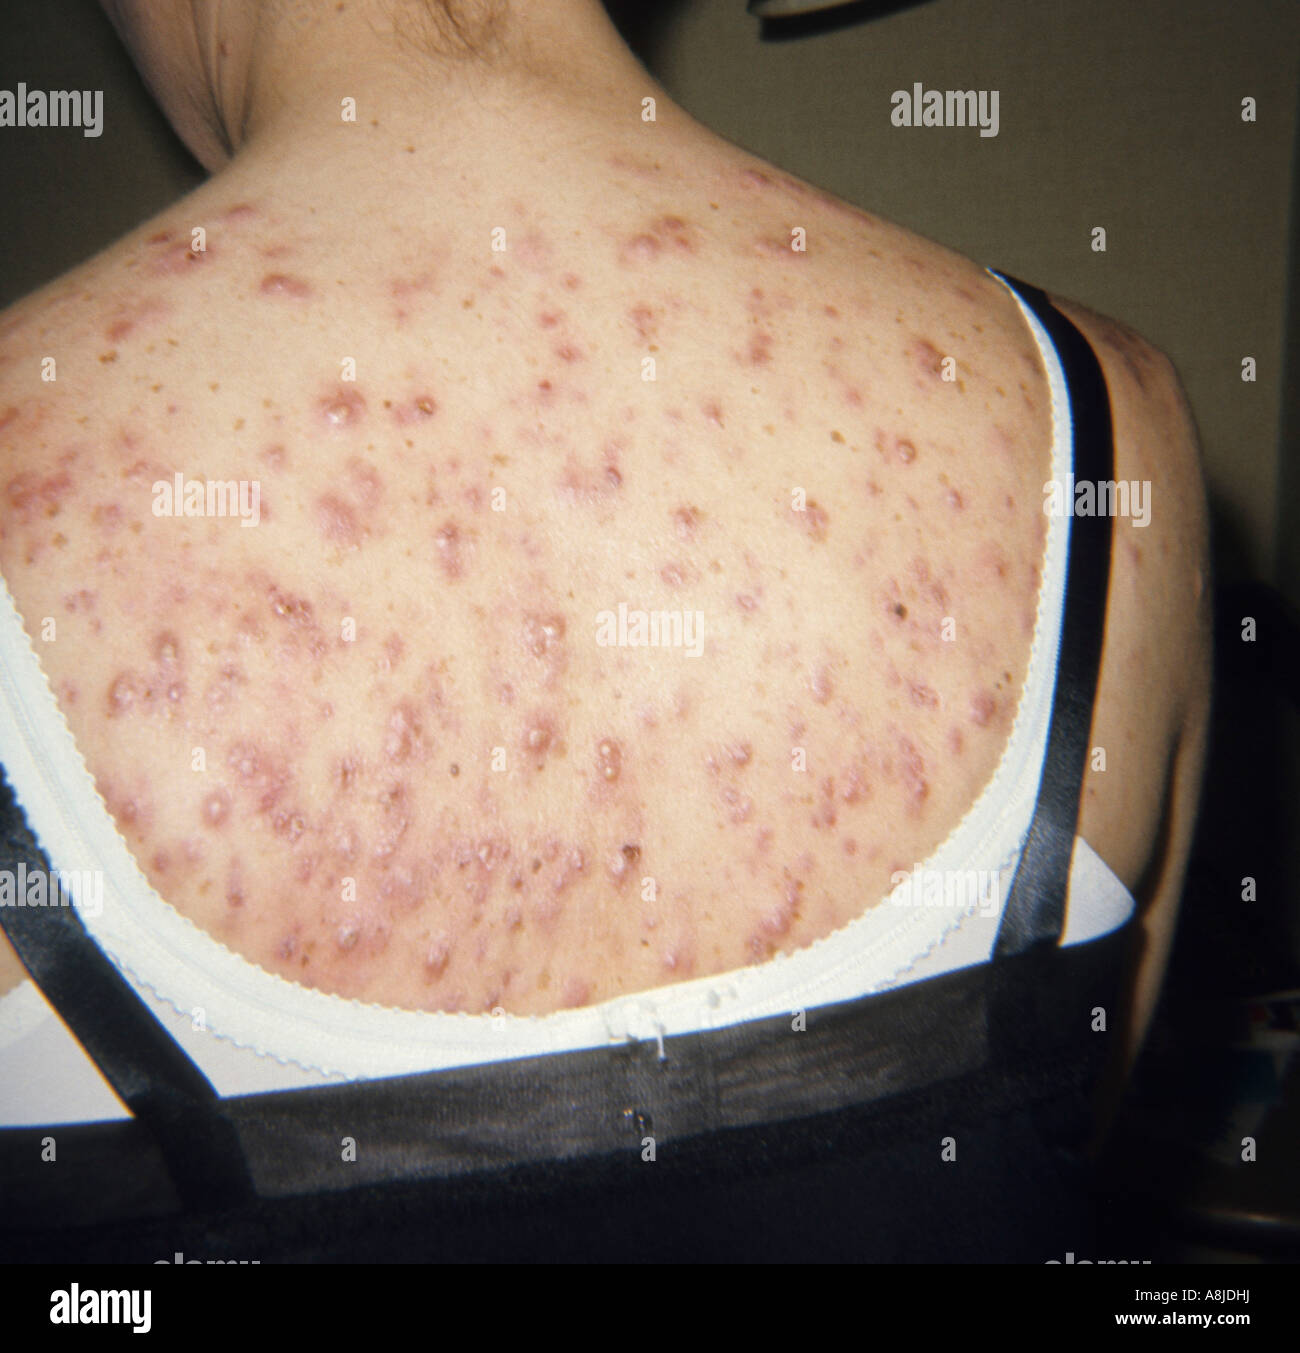 Cystica acne sulla schiena del paziente. Foto Stock